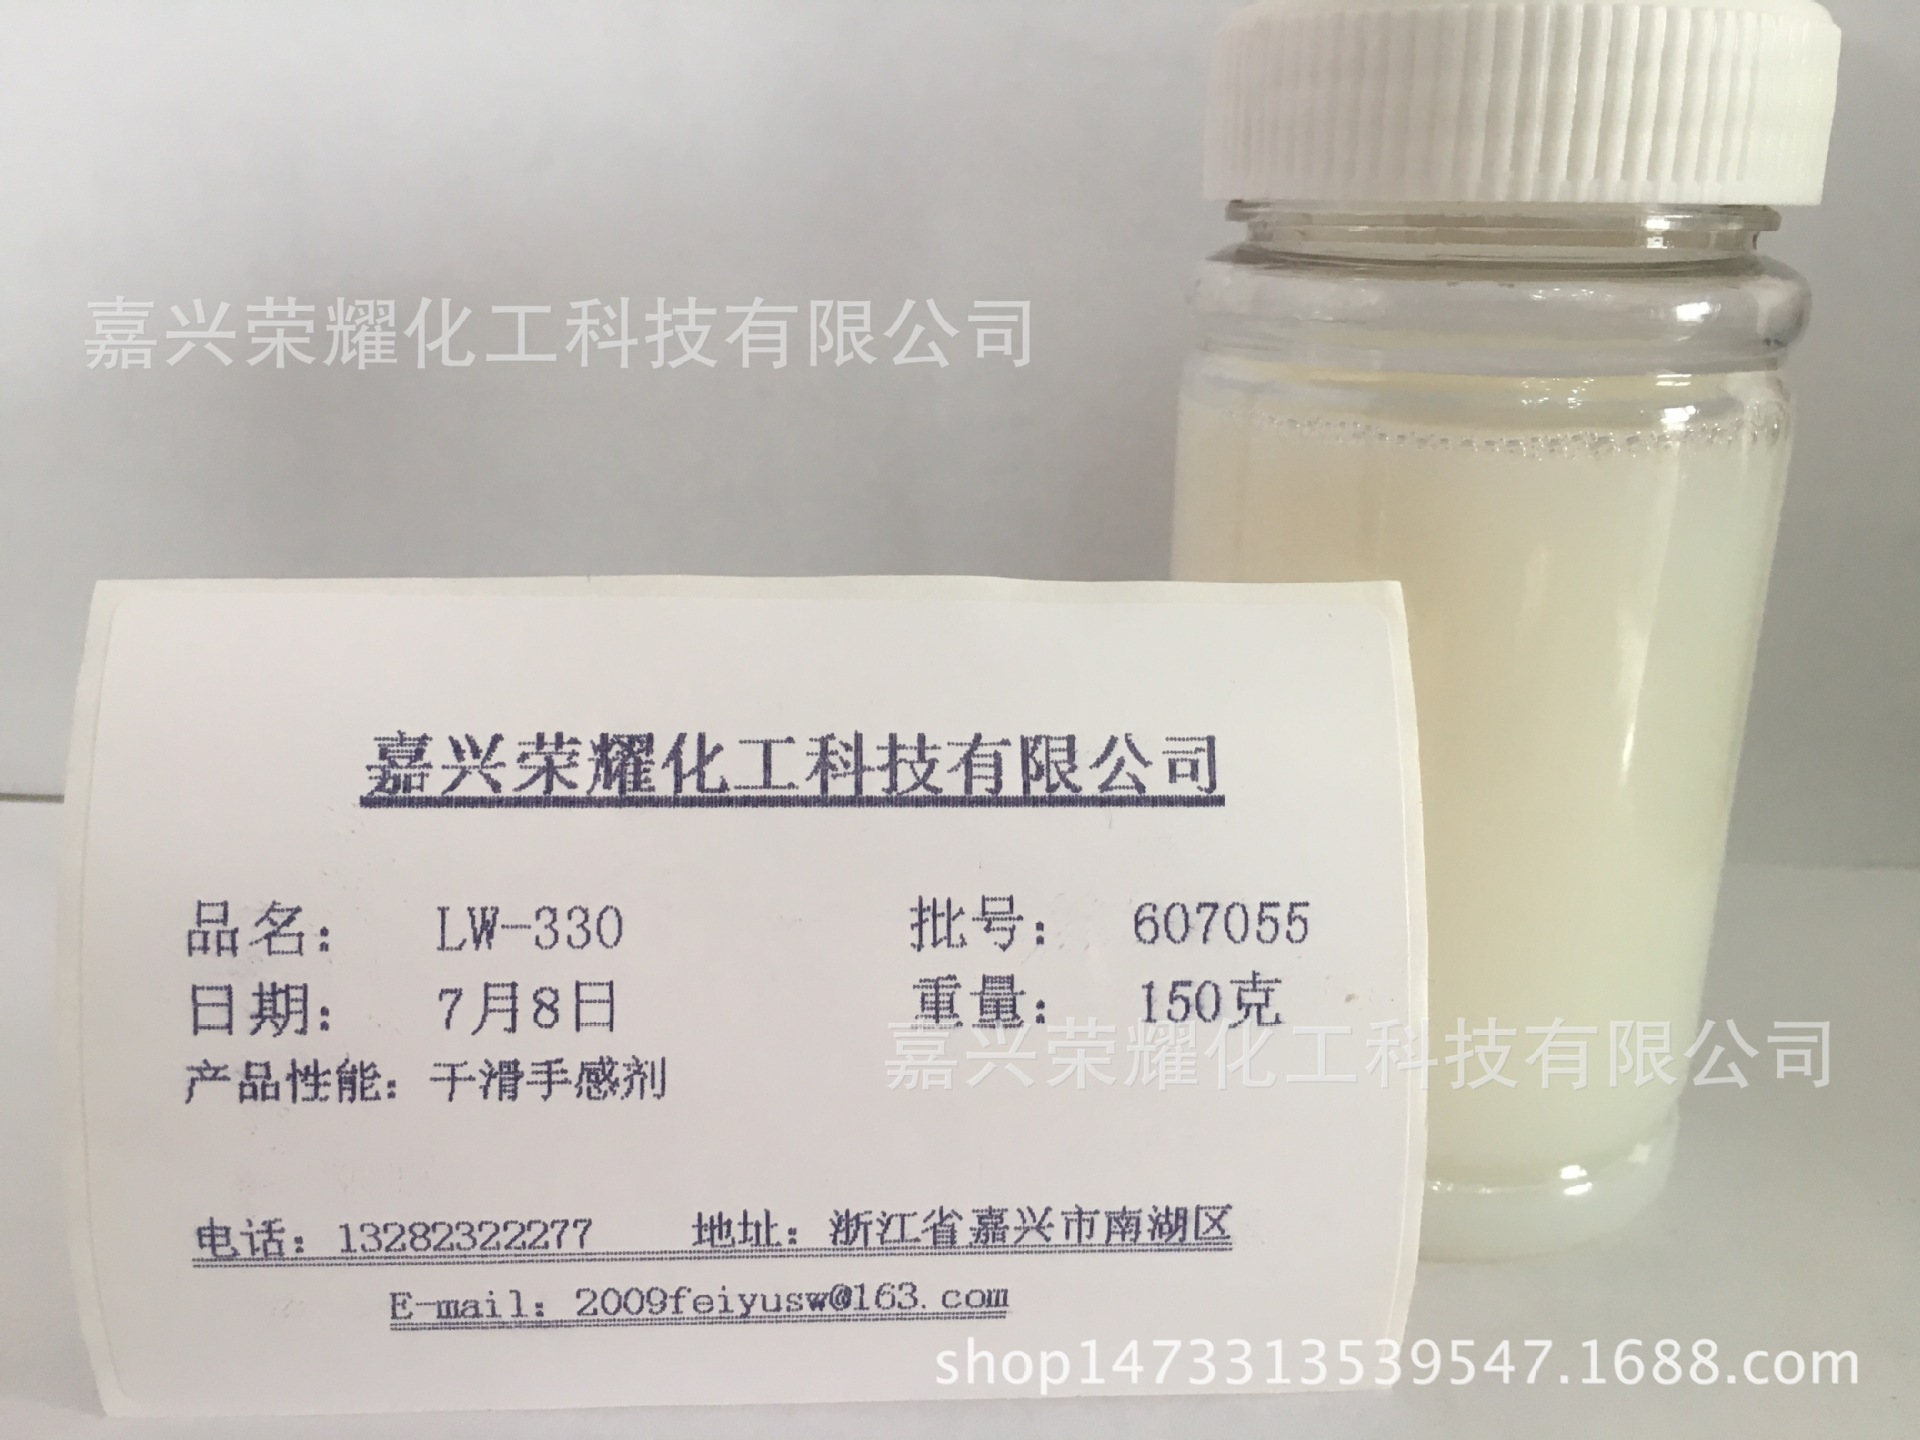 水性材料添加型助剂 干滑柔软手感剂 LW-330